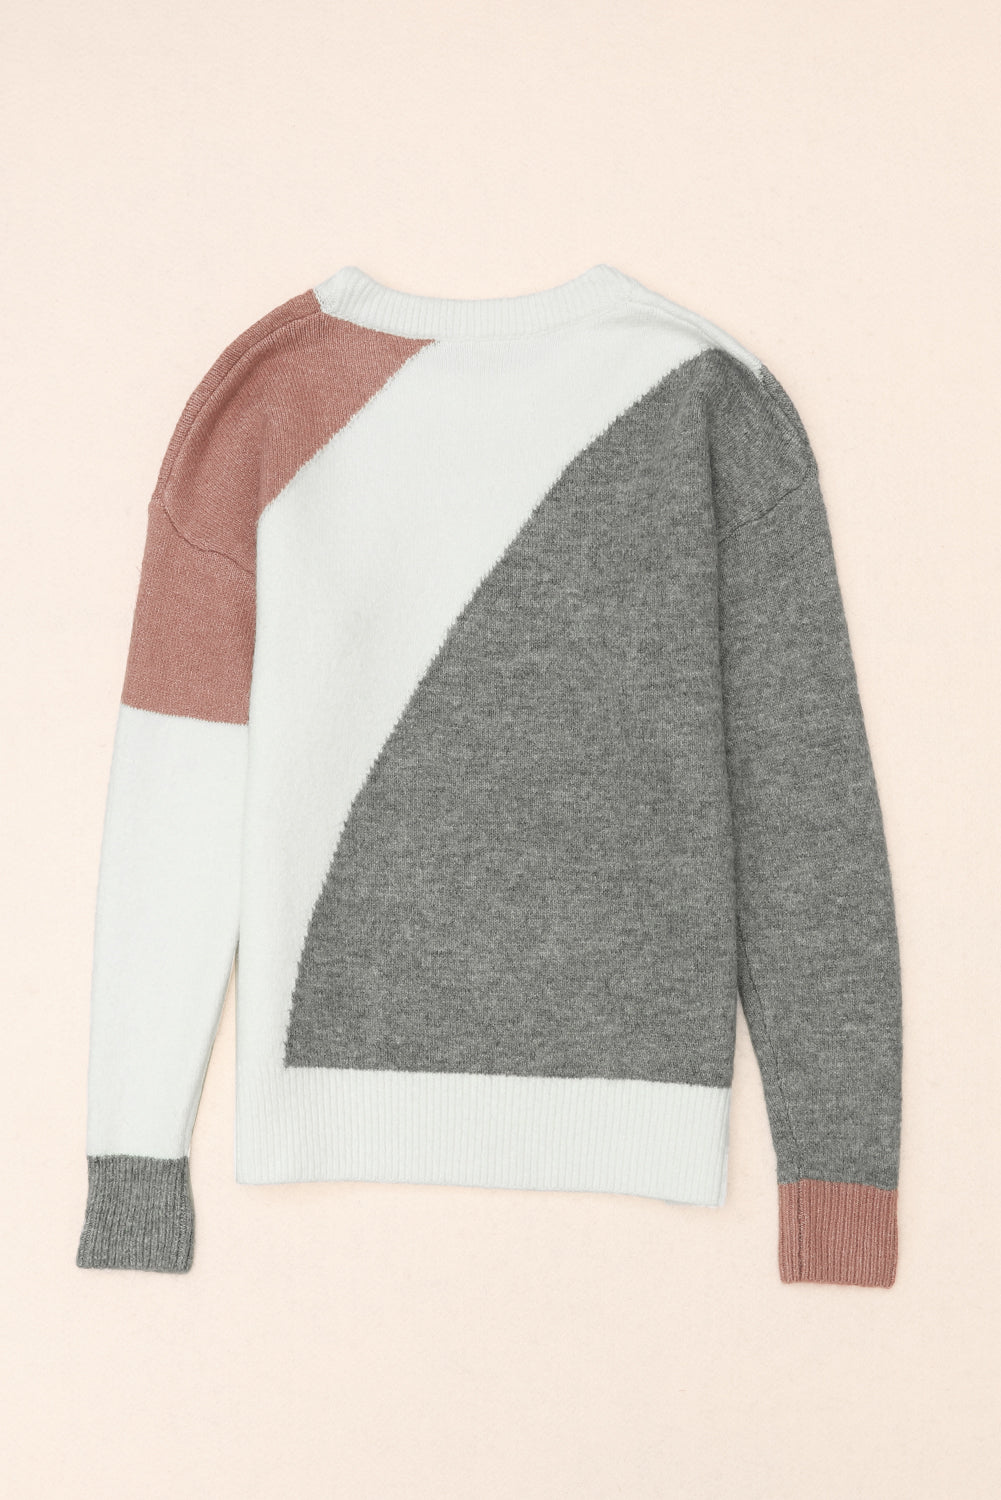 Siv pulover z okroglim ovratnikom z rebrastim robom v barvah